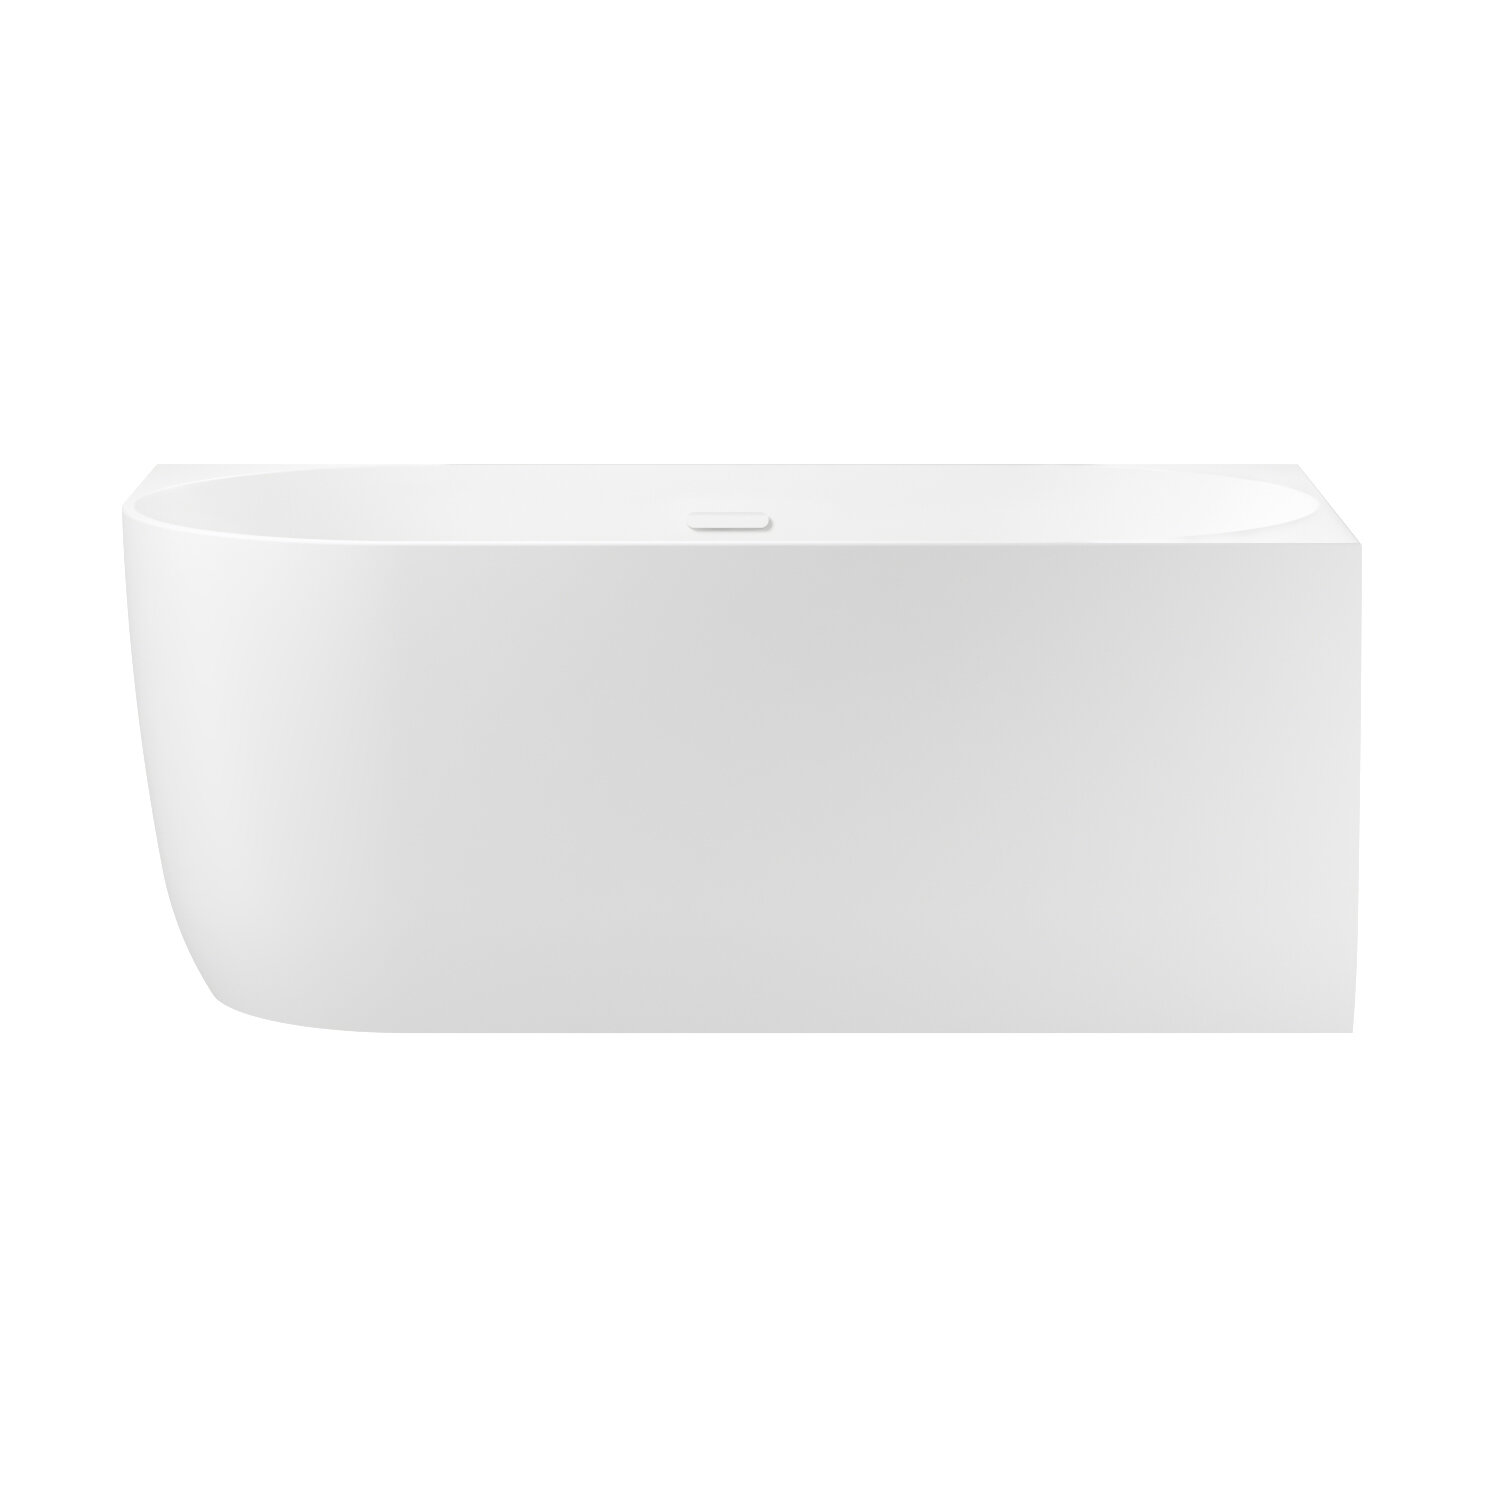 Пристенная угловая ванна акриловая 150 х 75 см с каркасом и экраном Wellsee Belle Spa 235702002 в наборе 4 в 1: асимметричная ванна белый глянец (правый разворот), каркас, экран, слив-перелив